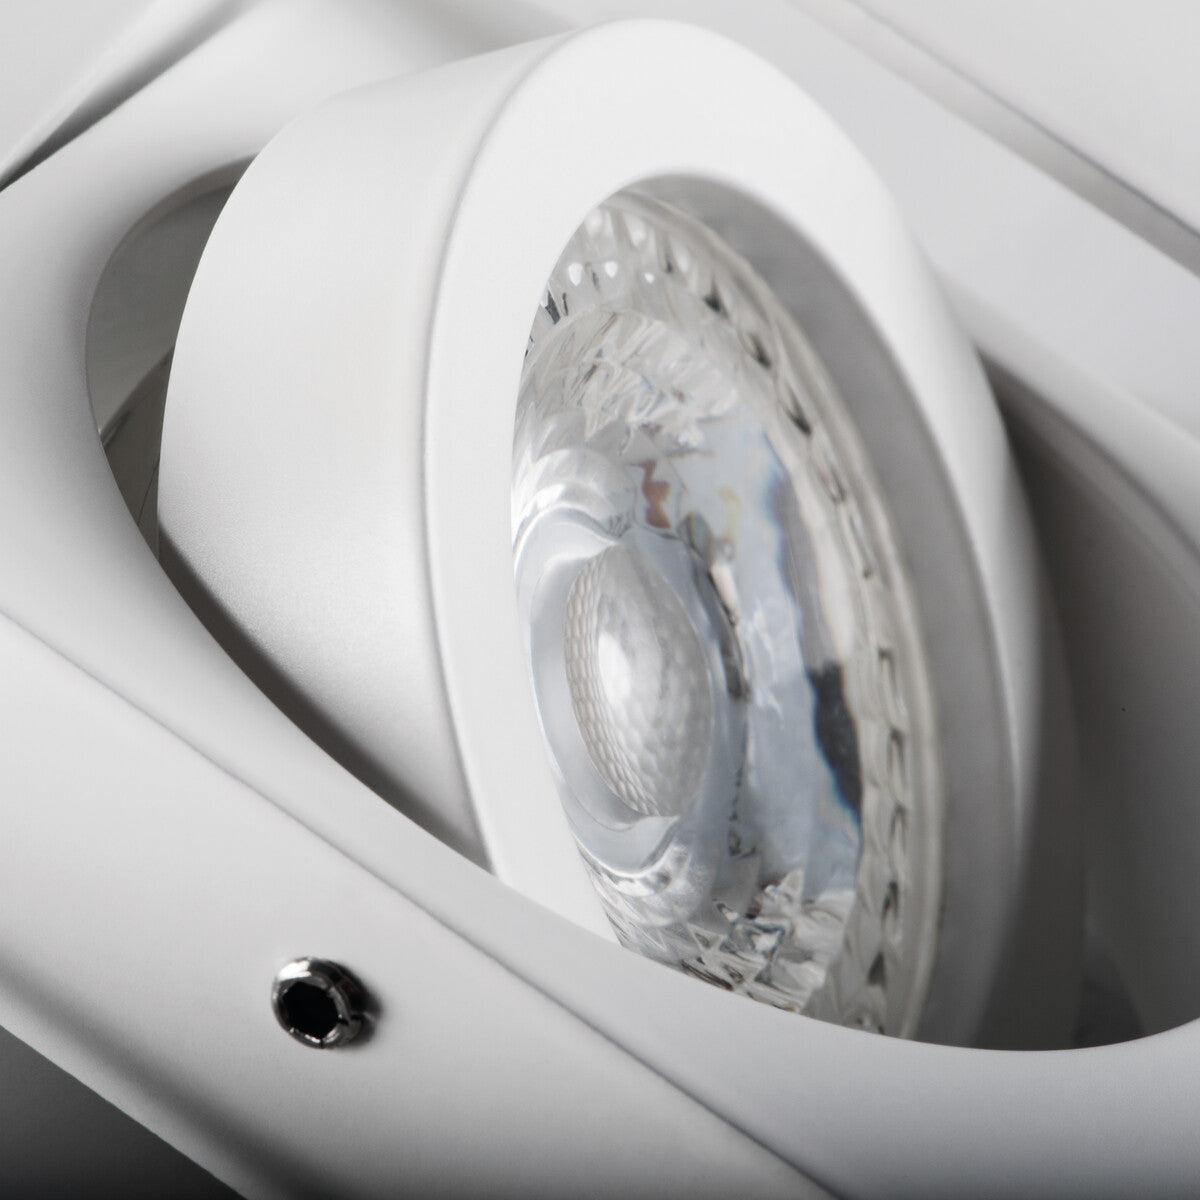 Kanlux ALREN Ceiling Recessed GU10 Spot Down Light Adjustable Tilt Lighting